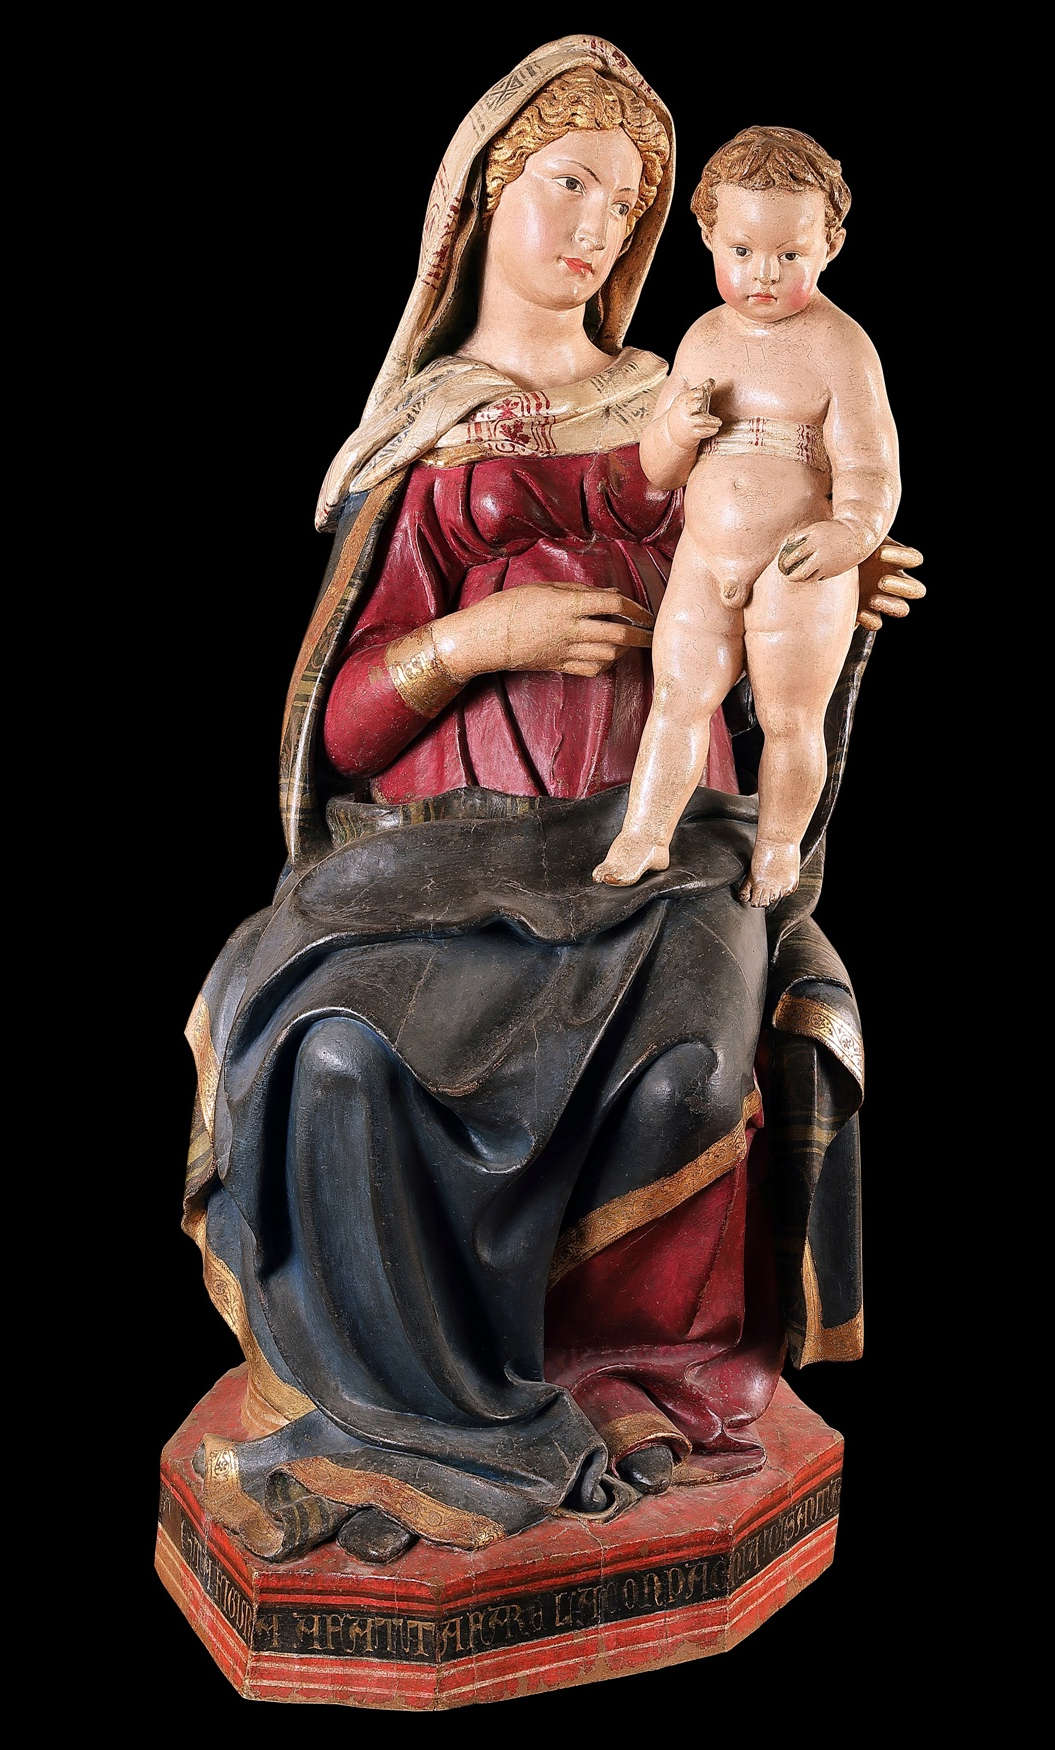 Jacopo della Quercia, Madonna and Child (c. 1420; painted wood; Anghiari, Museo di Palazzo Taglieschi)